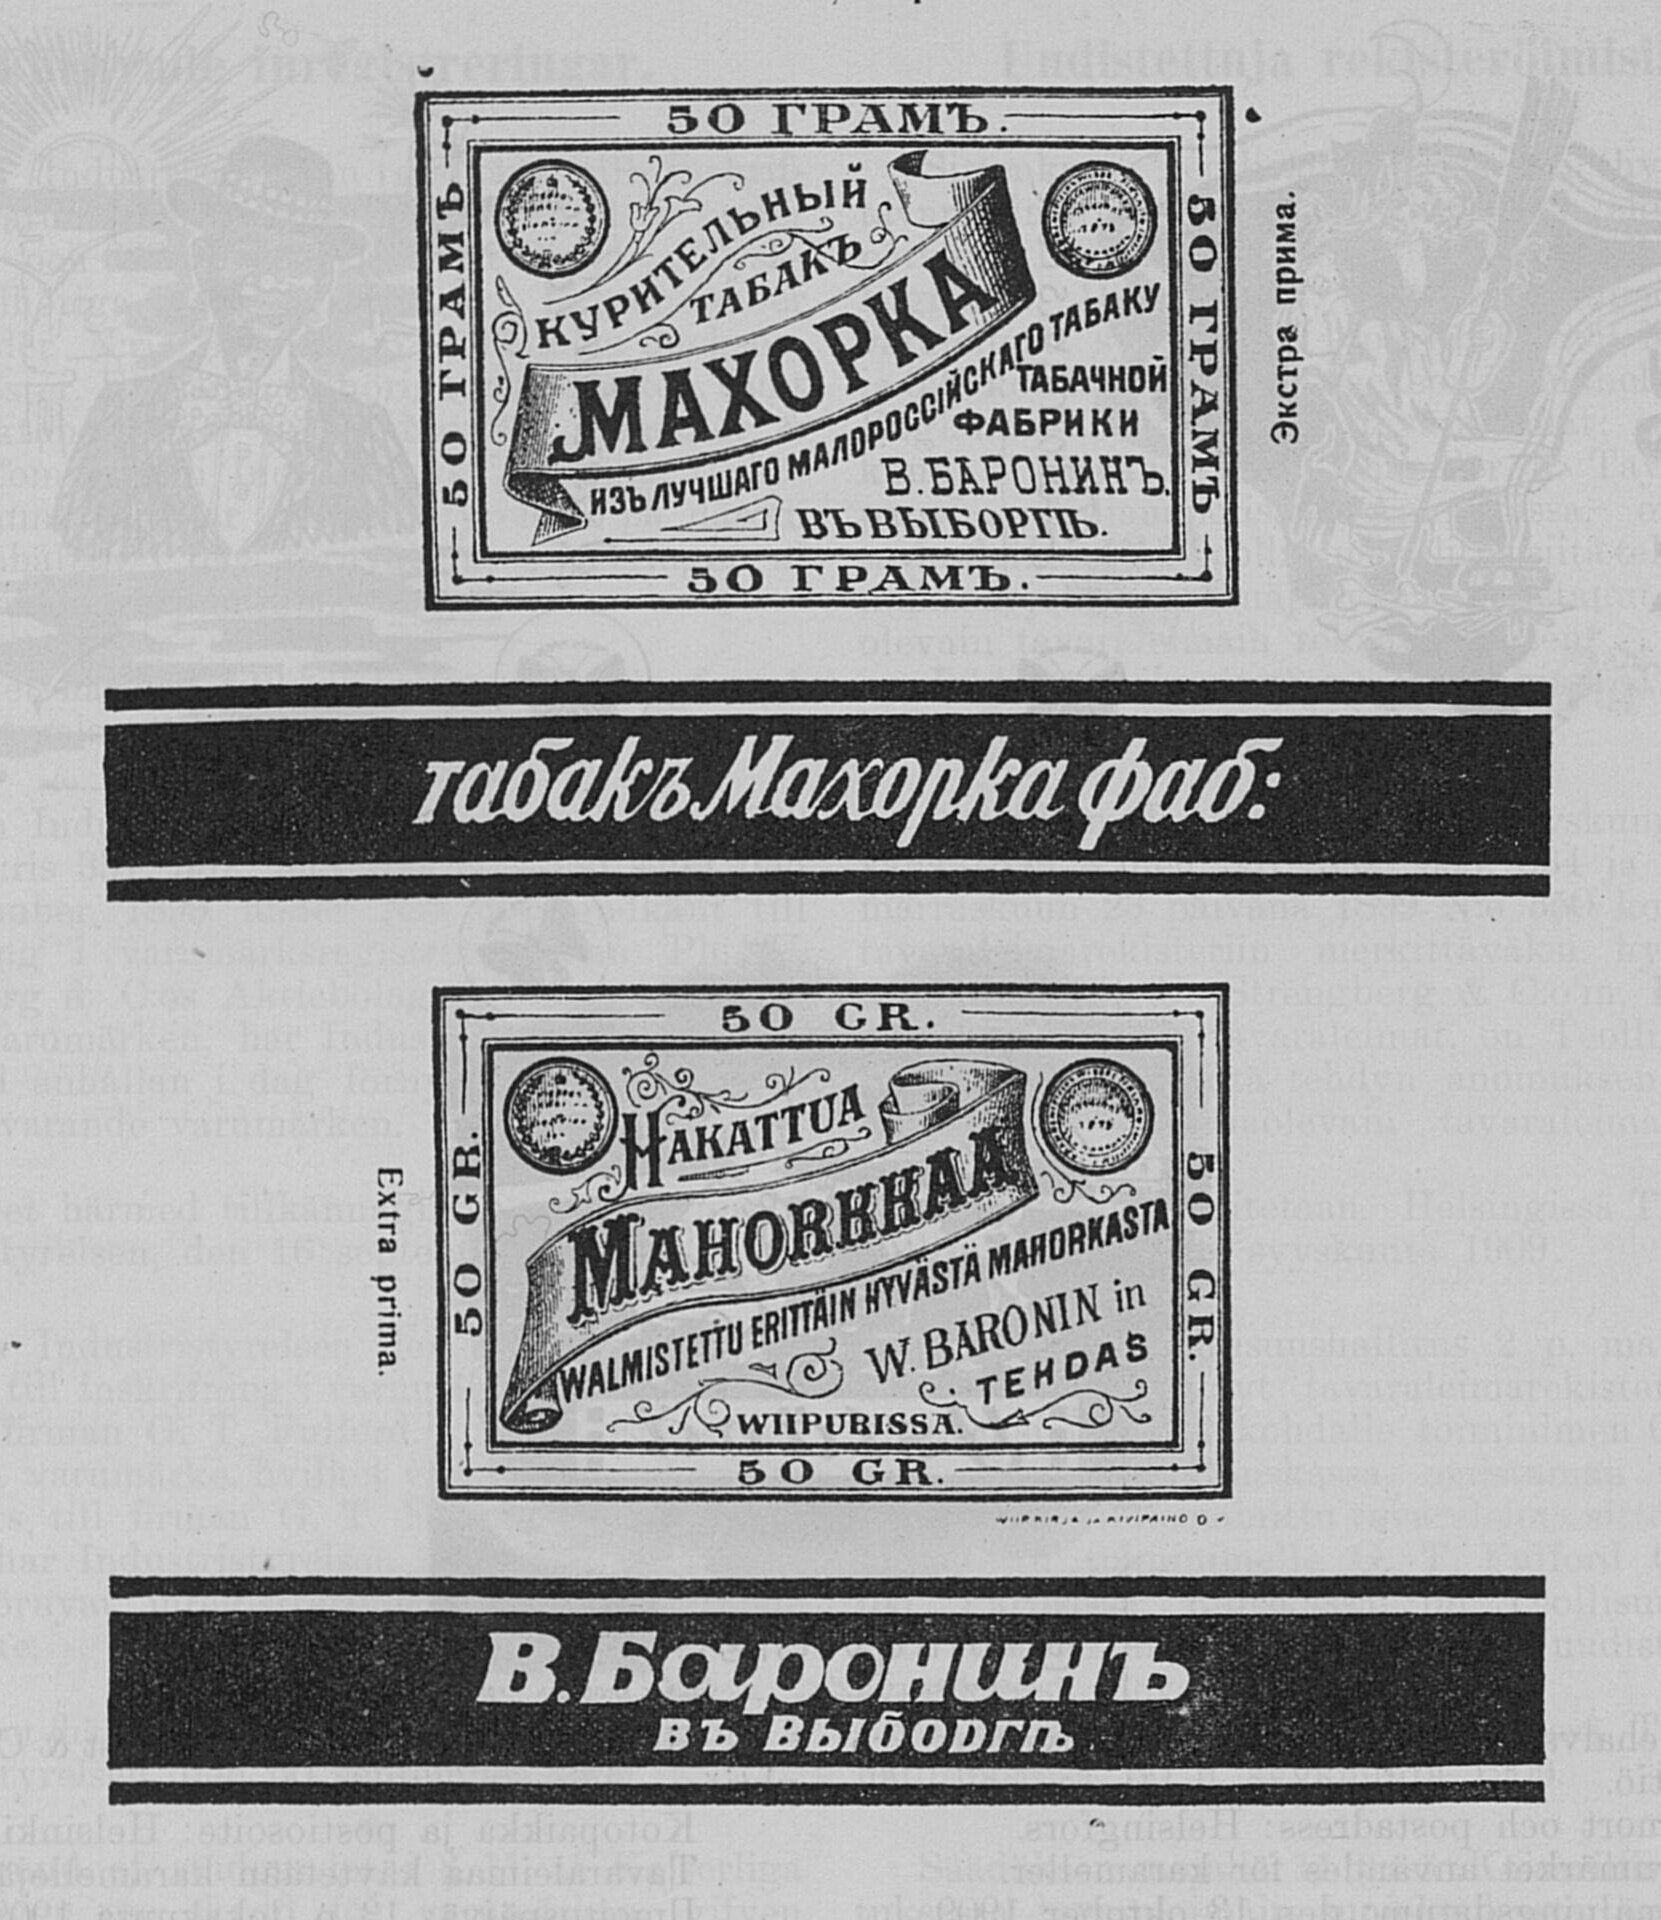 Образец табачной обертки, 1909 год.